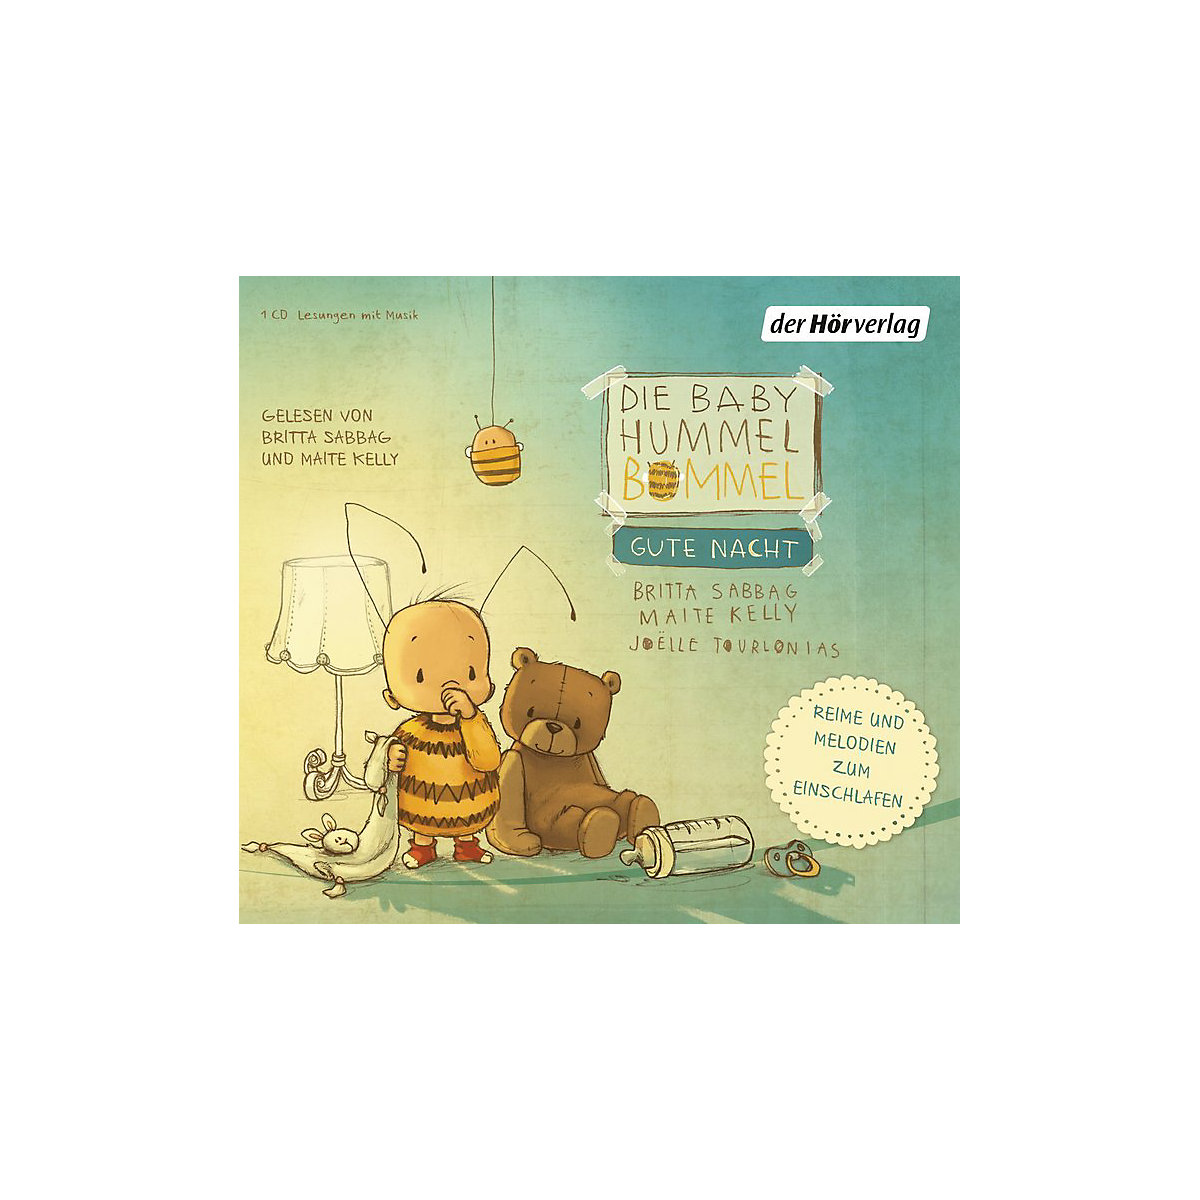 Die Baby Hummel Bommel: Gute Nacht 1 Audio-CD